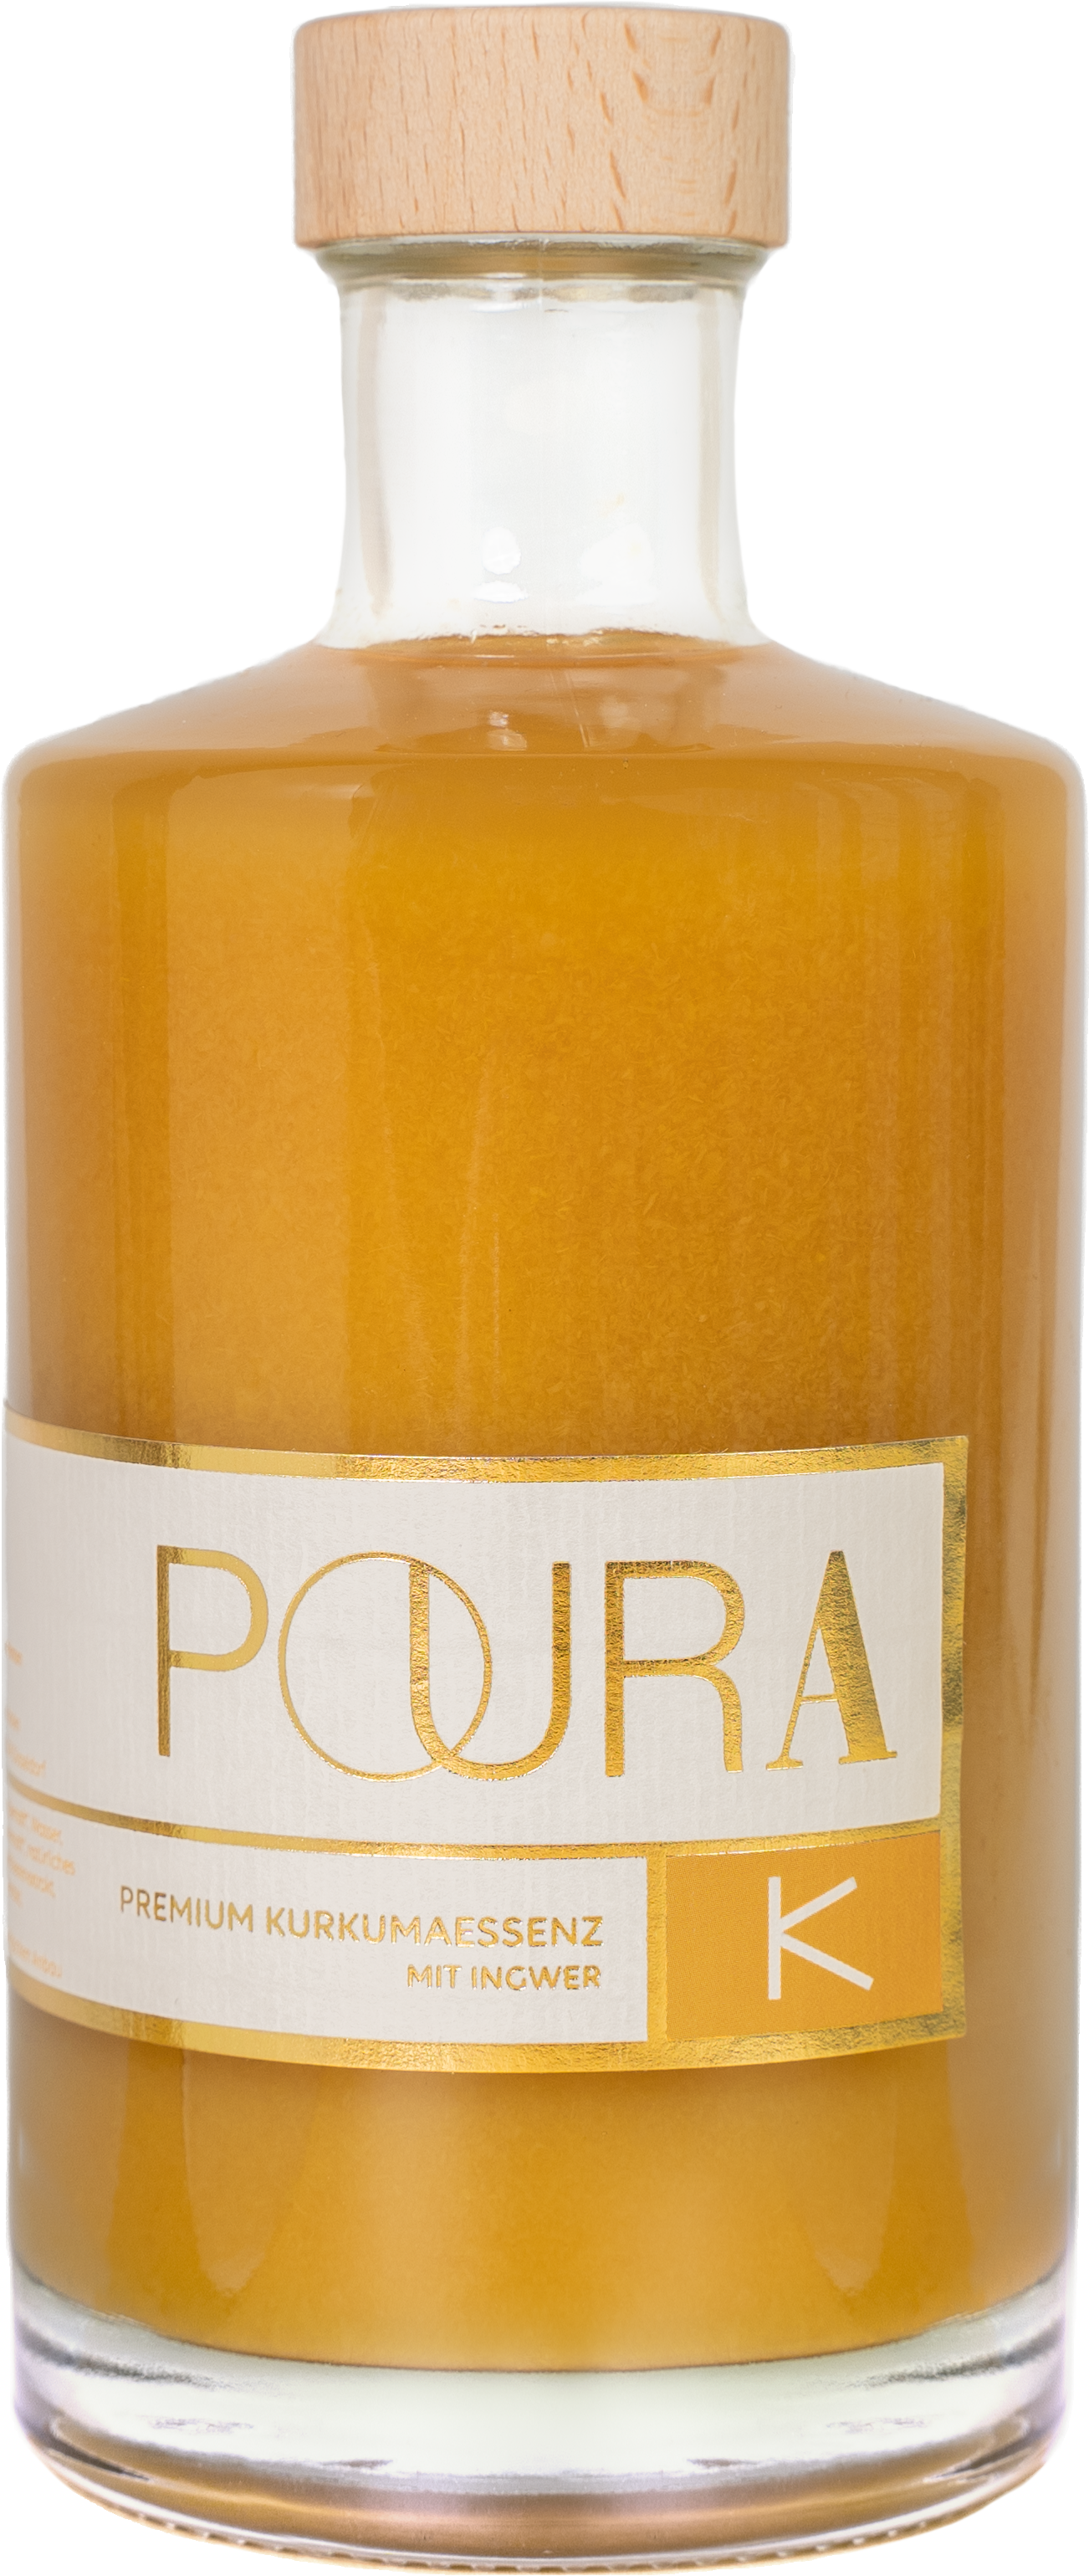 Poura - Premium KURKUMA Essenz - 495ml